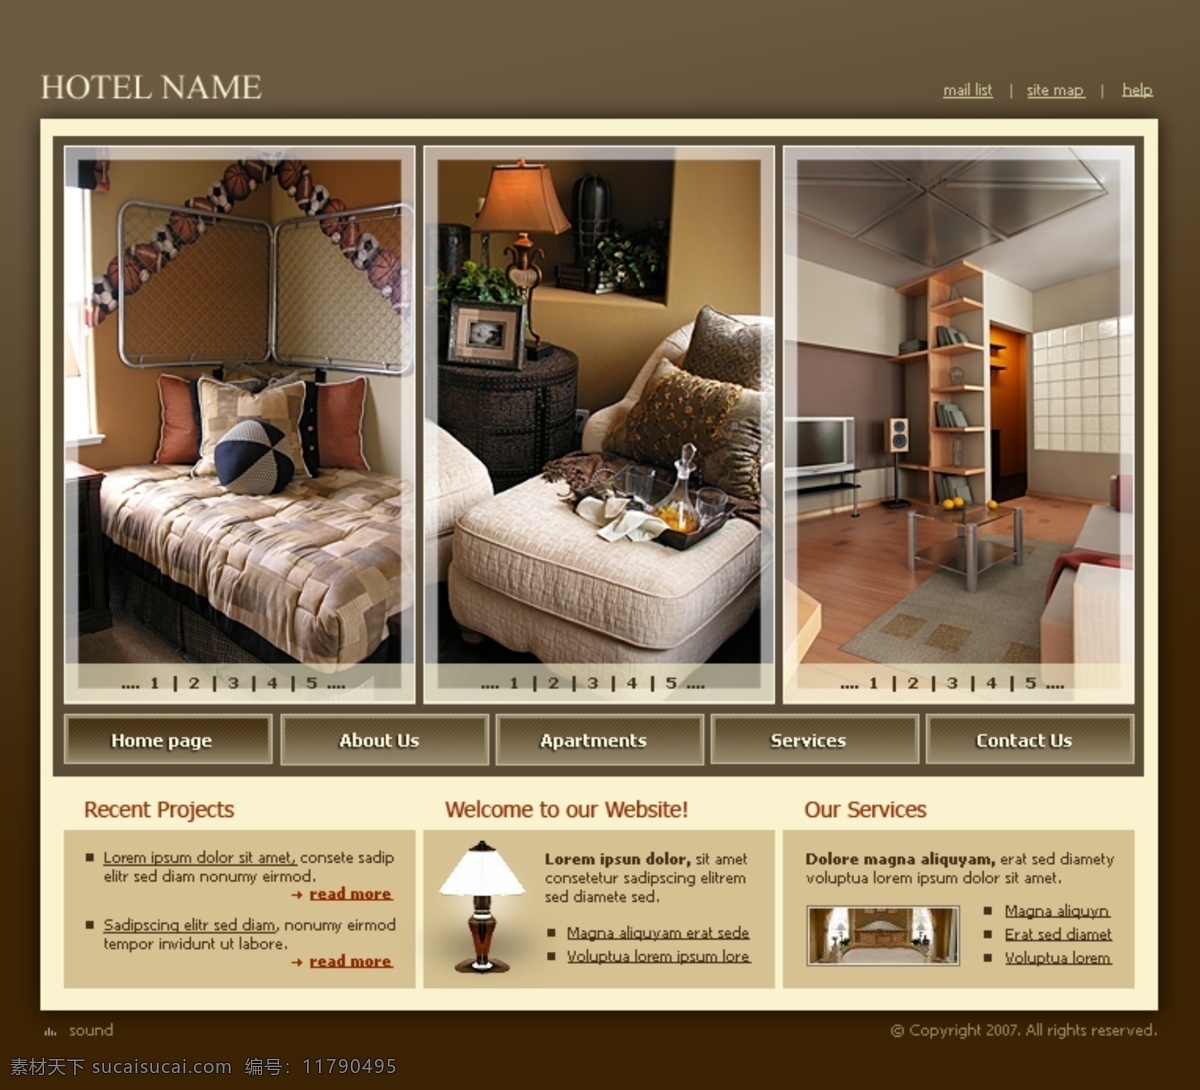 豪华 现代 酒店 psd素材 网页素材 欧美风格 欧美网页模板 网页模板 豪华现代酒店